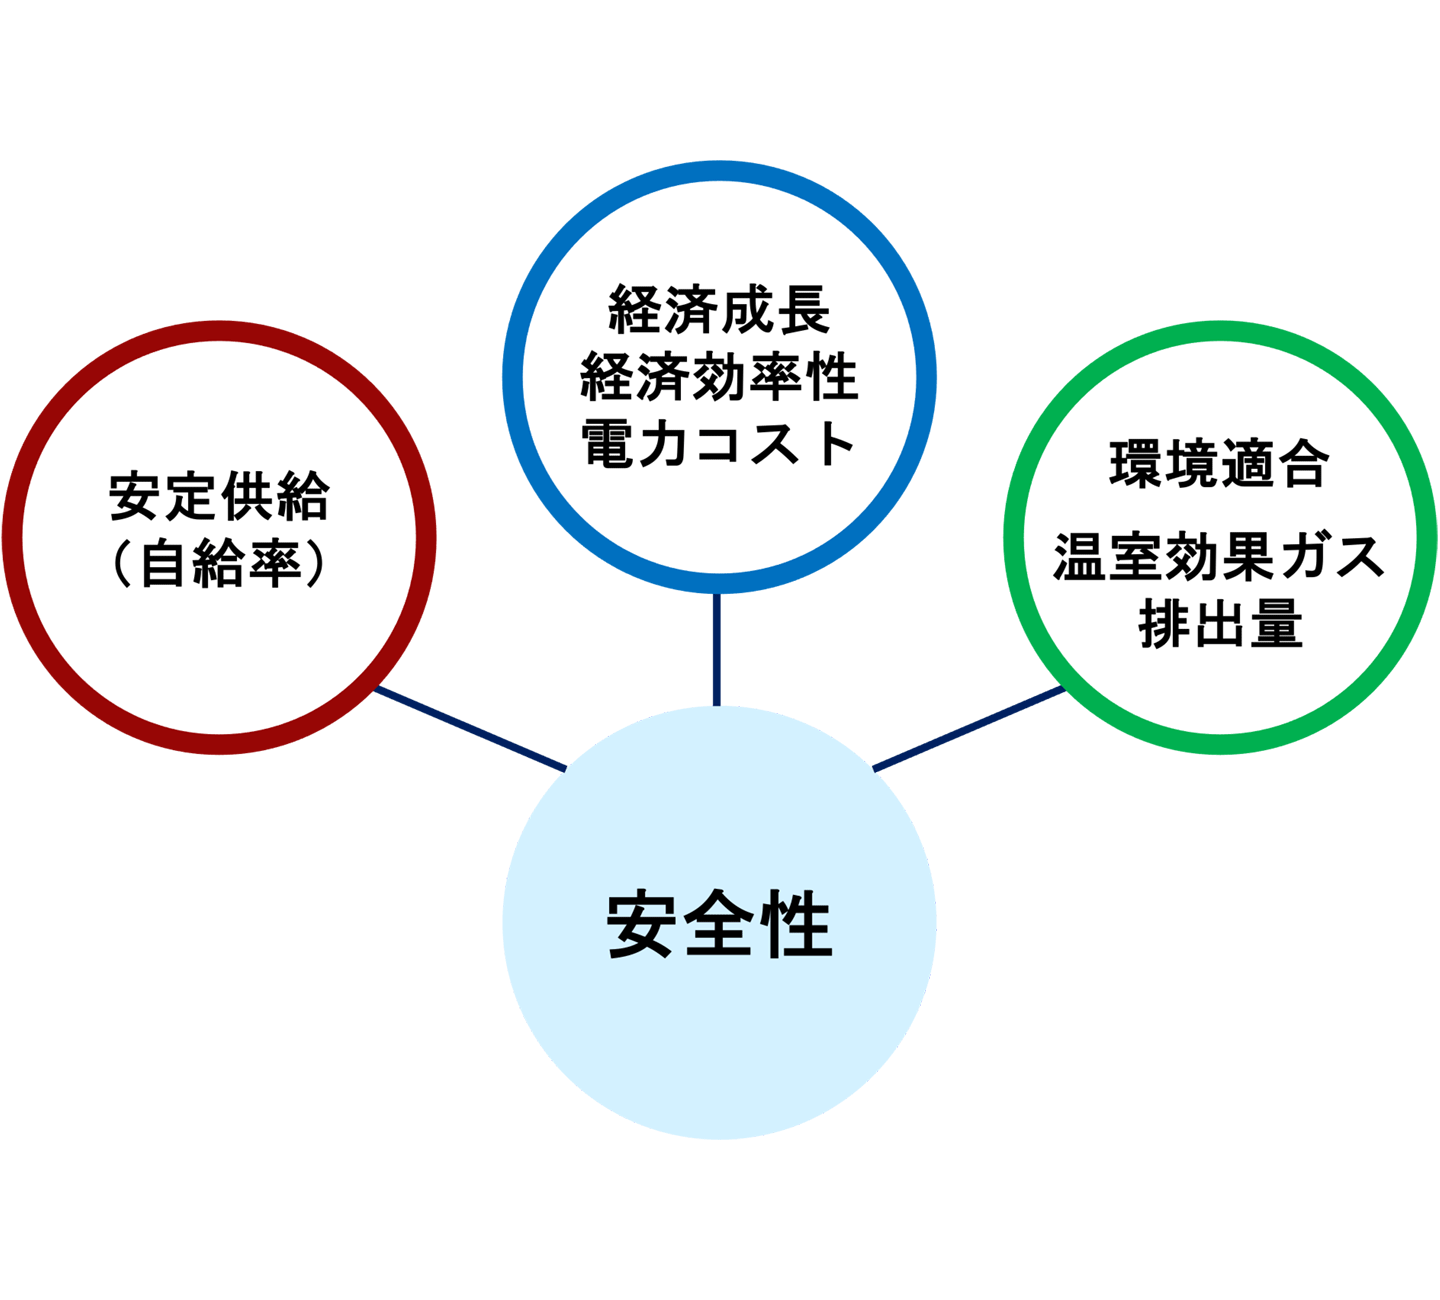 (a) 日本の3E+S：4つの政策目標の“ハーモニー”